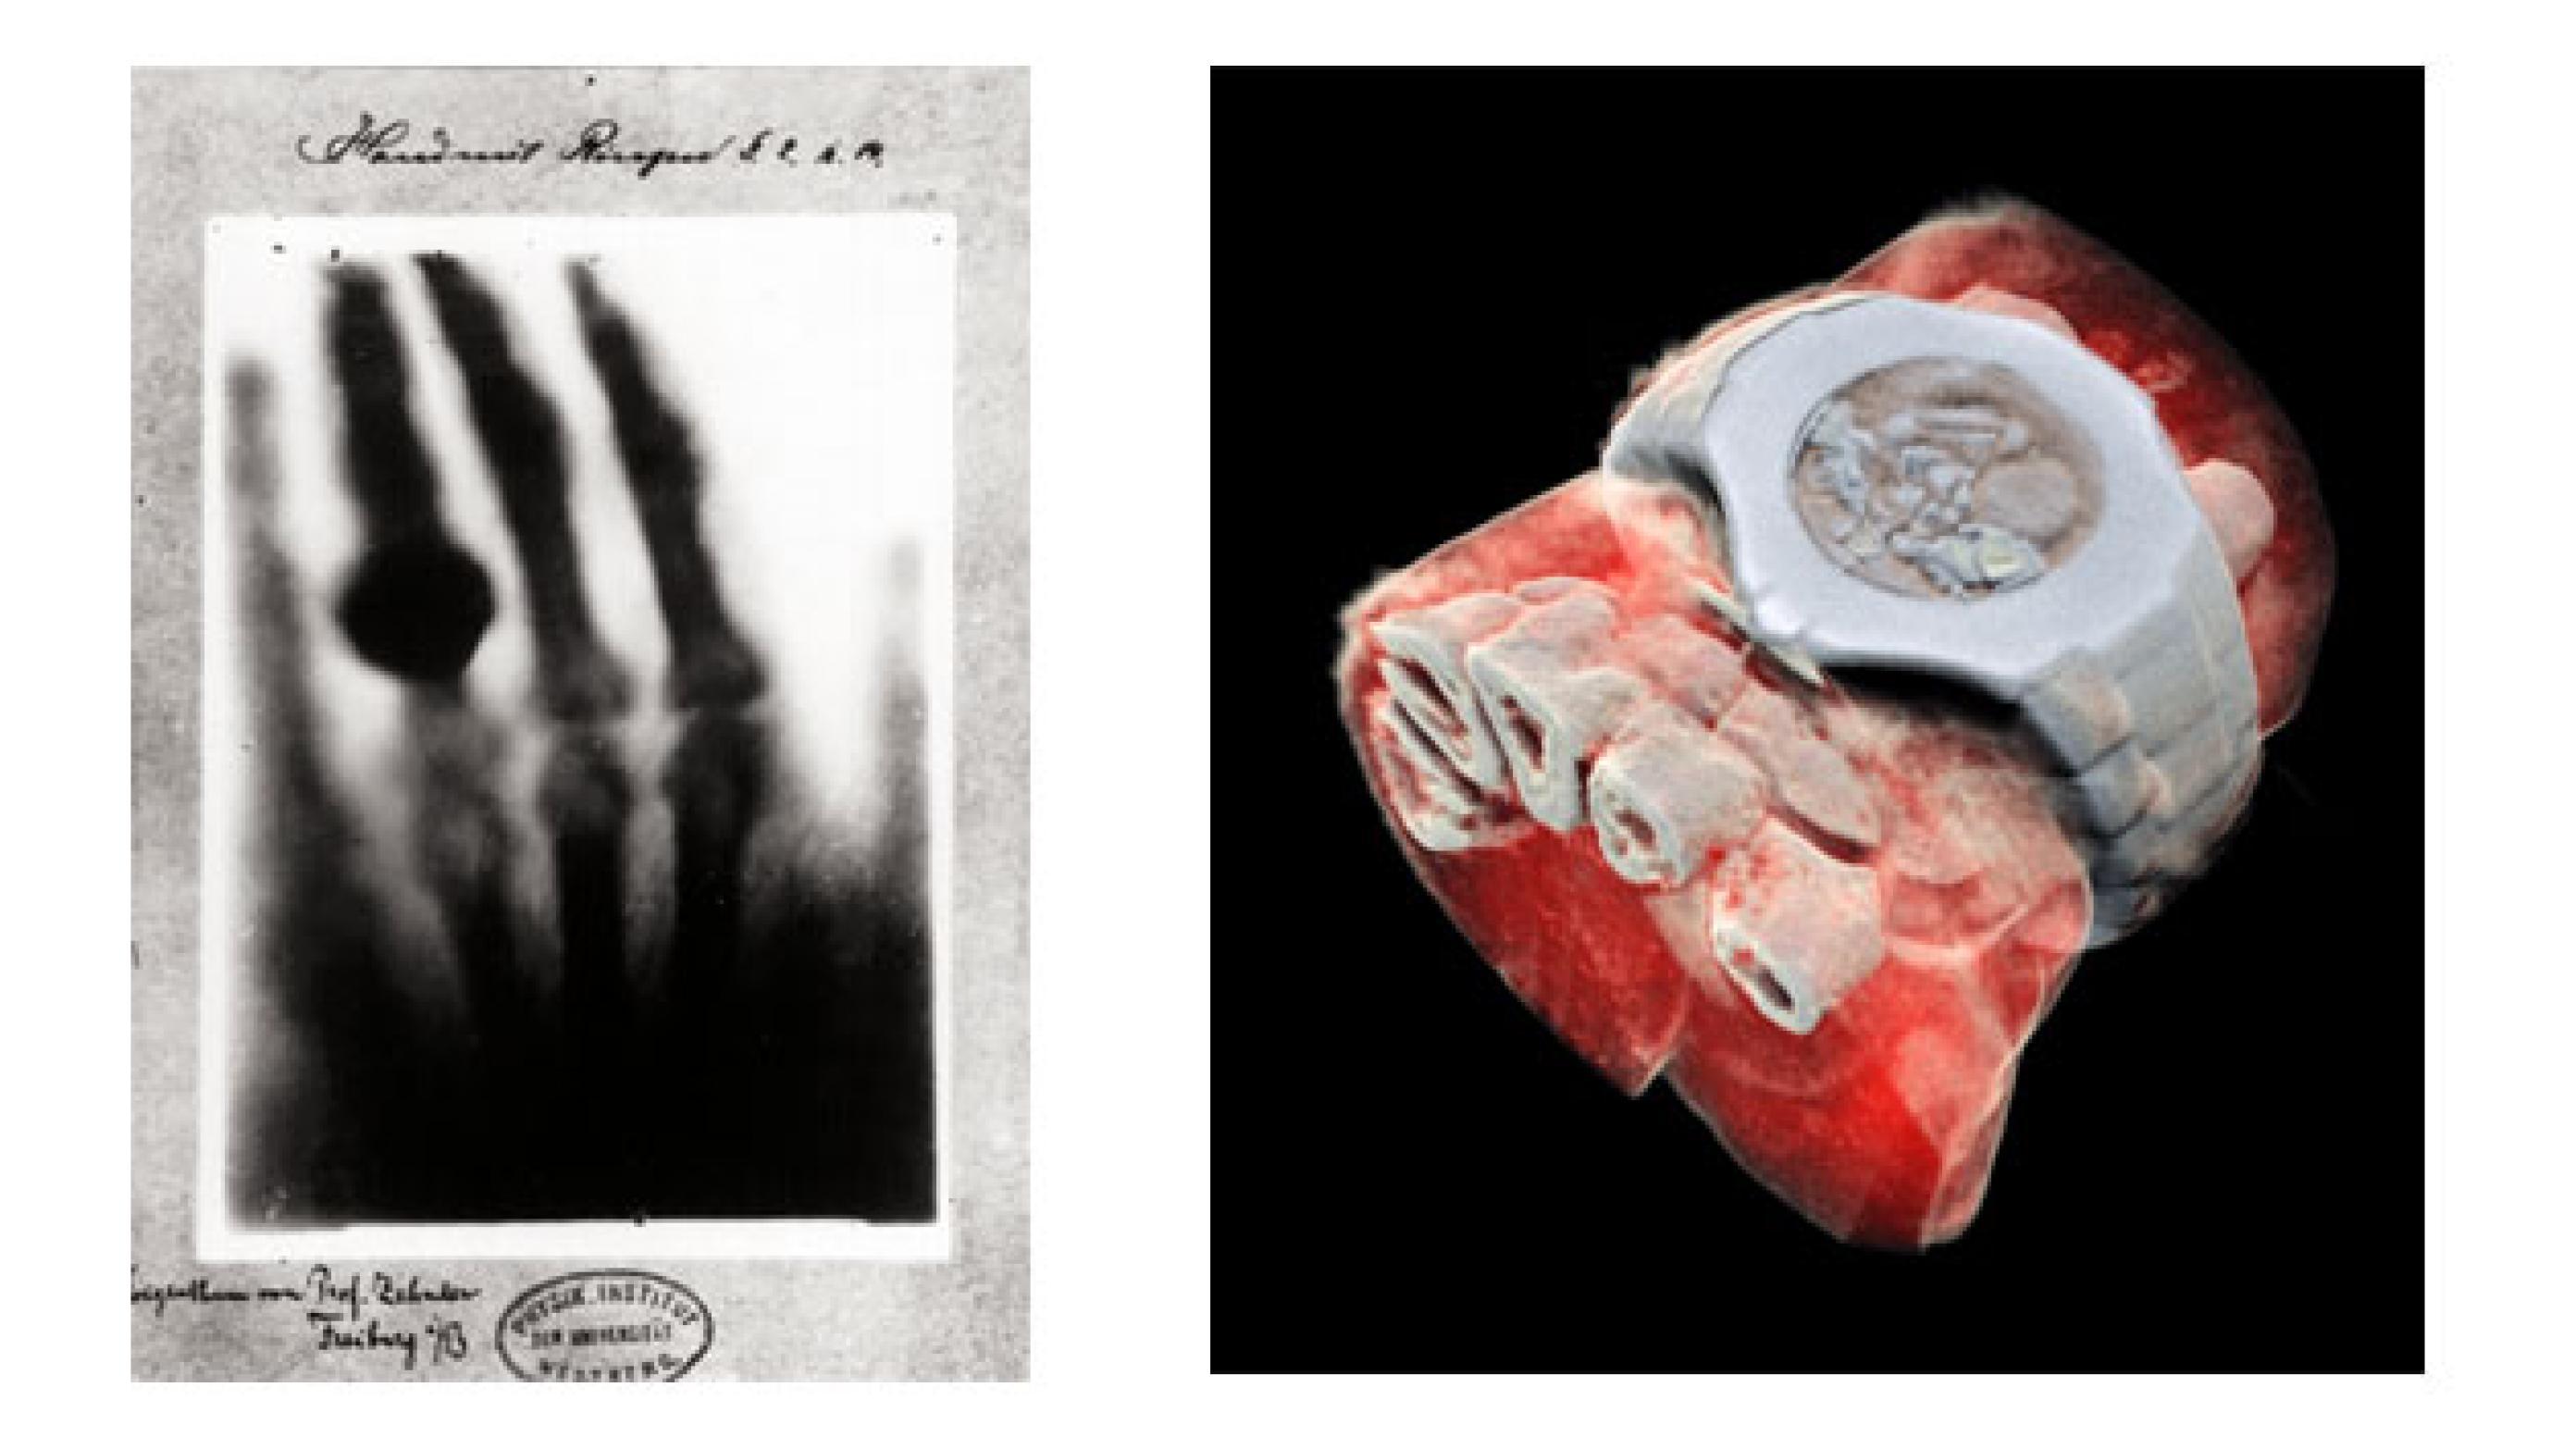 Verdens første røntgenbillede. W.C. Röntgens billede af sin kones hånd. Foto: Wikimedia Commons og 3D røntgenbillede i farver. Foto: Mars Bioimaging